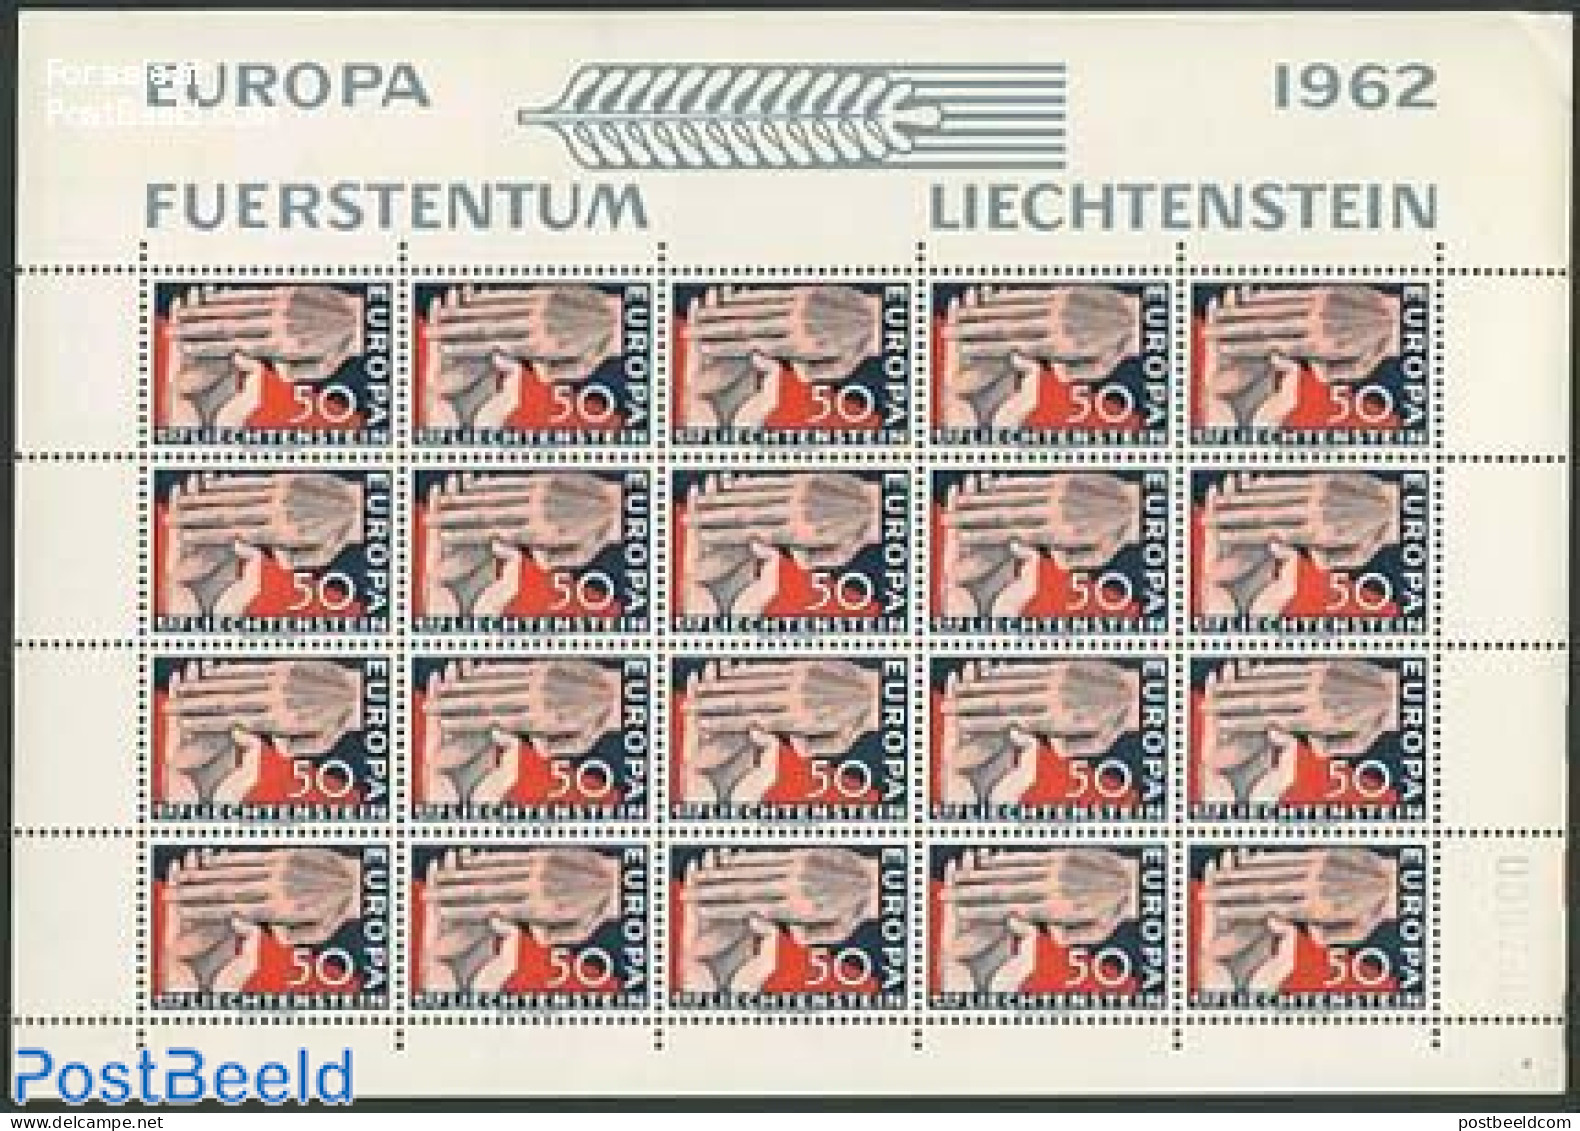 Liechtenstein 1962 Europa 1v, M/s, Mint NH, History - Europa (cept) - Ungebraucht